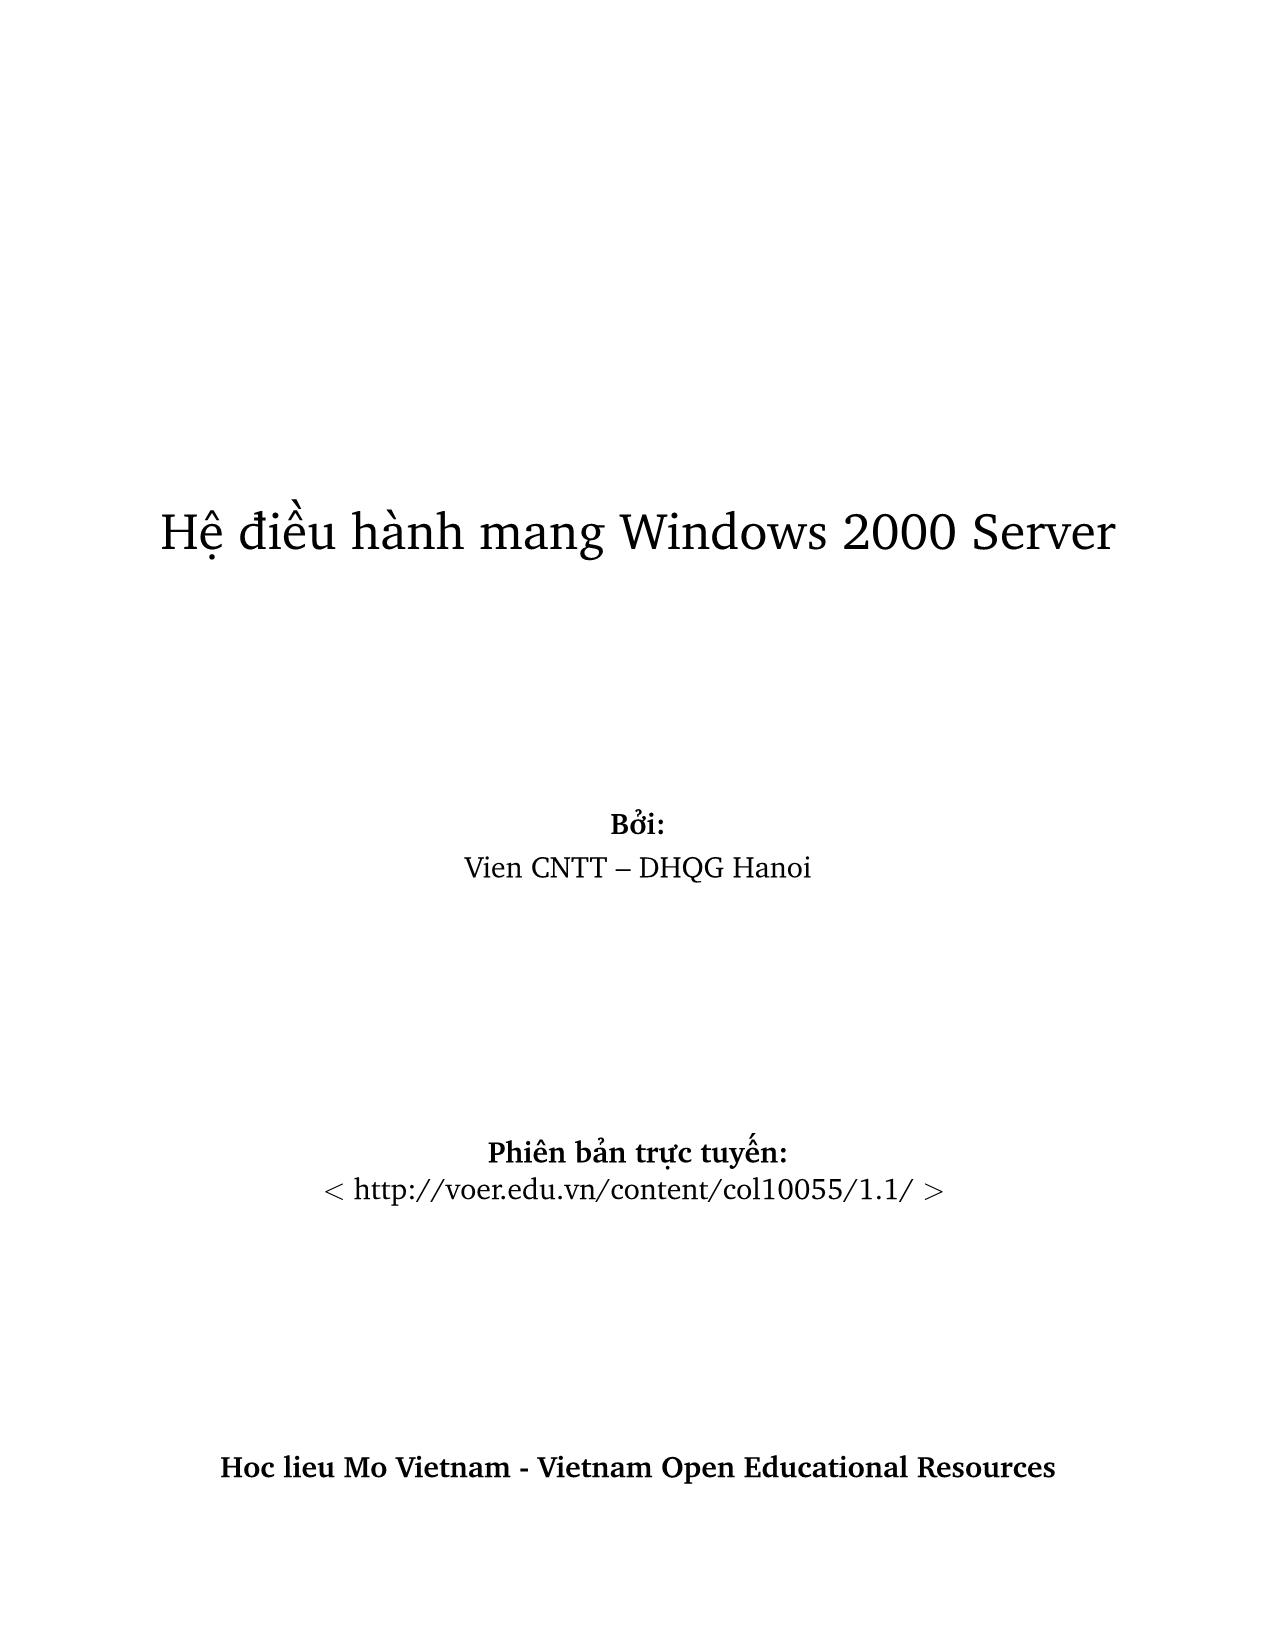 Giáo trình Hệ điều hành mang Windows 2000 Server (Phần 1) trang 3